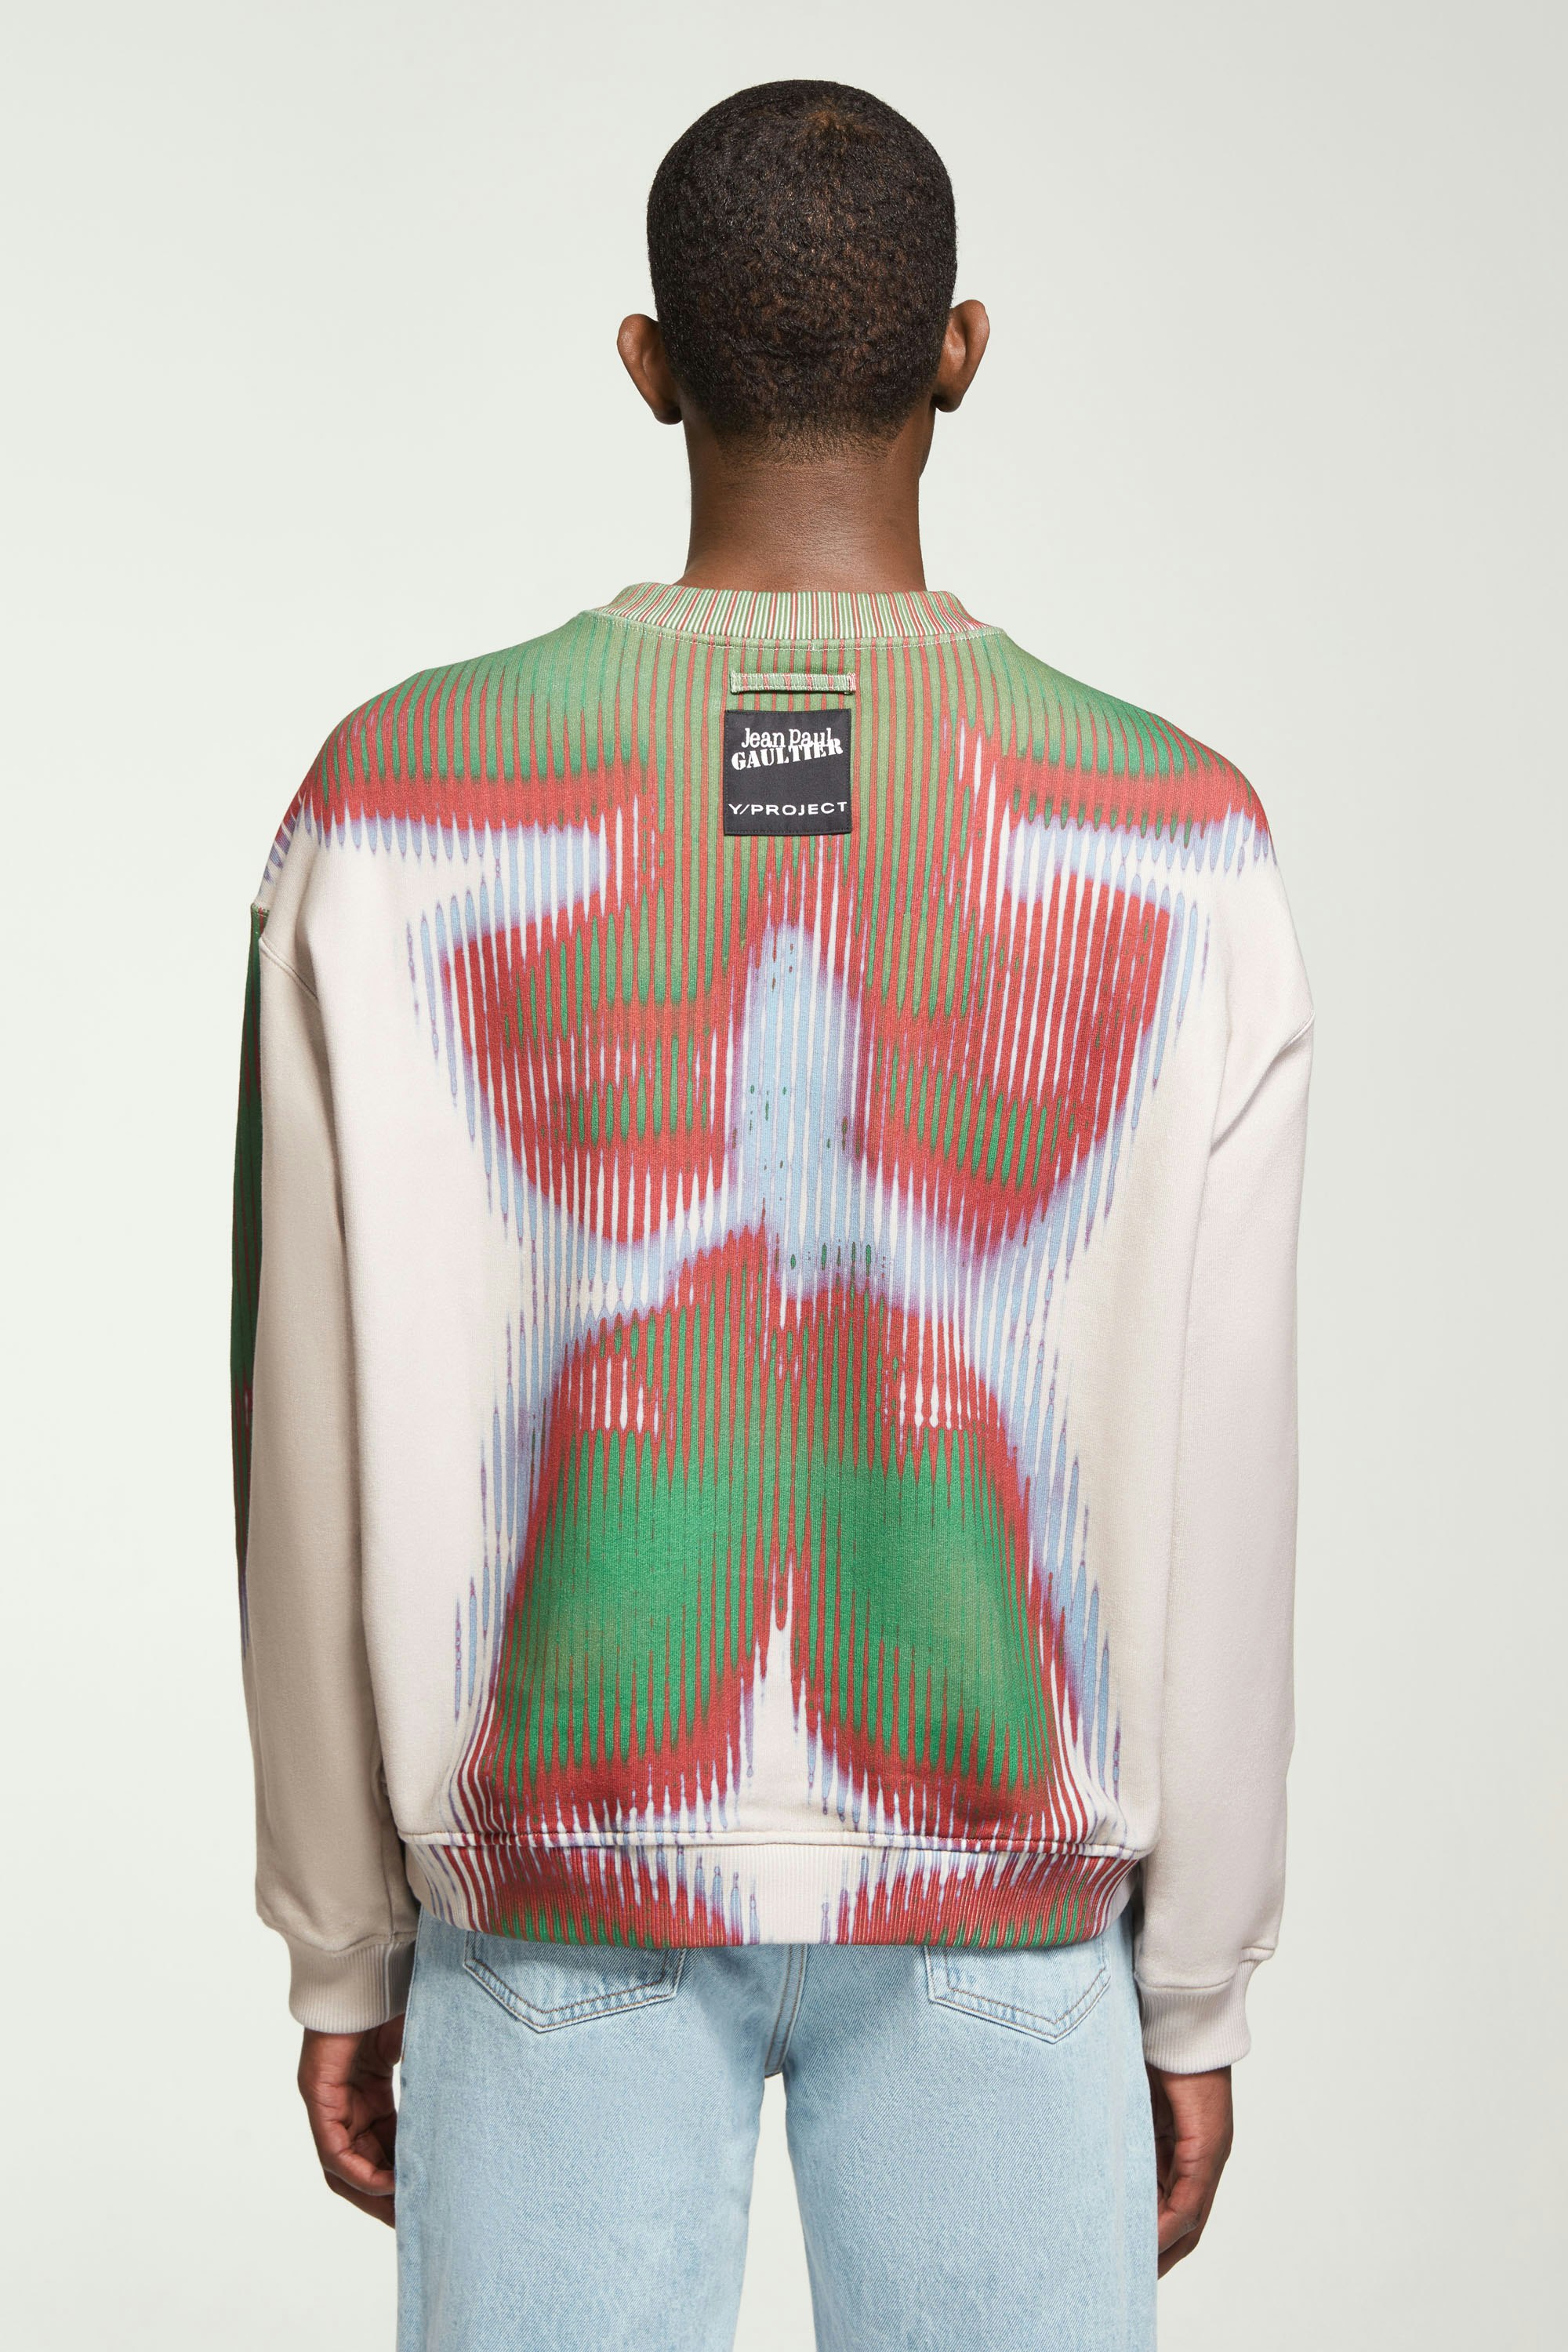 The Green & Beige Body Morph Sweatshirt by Jean Paul Gaultier x Y/Project